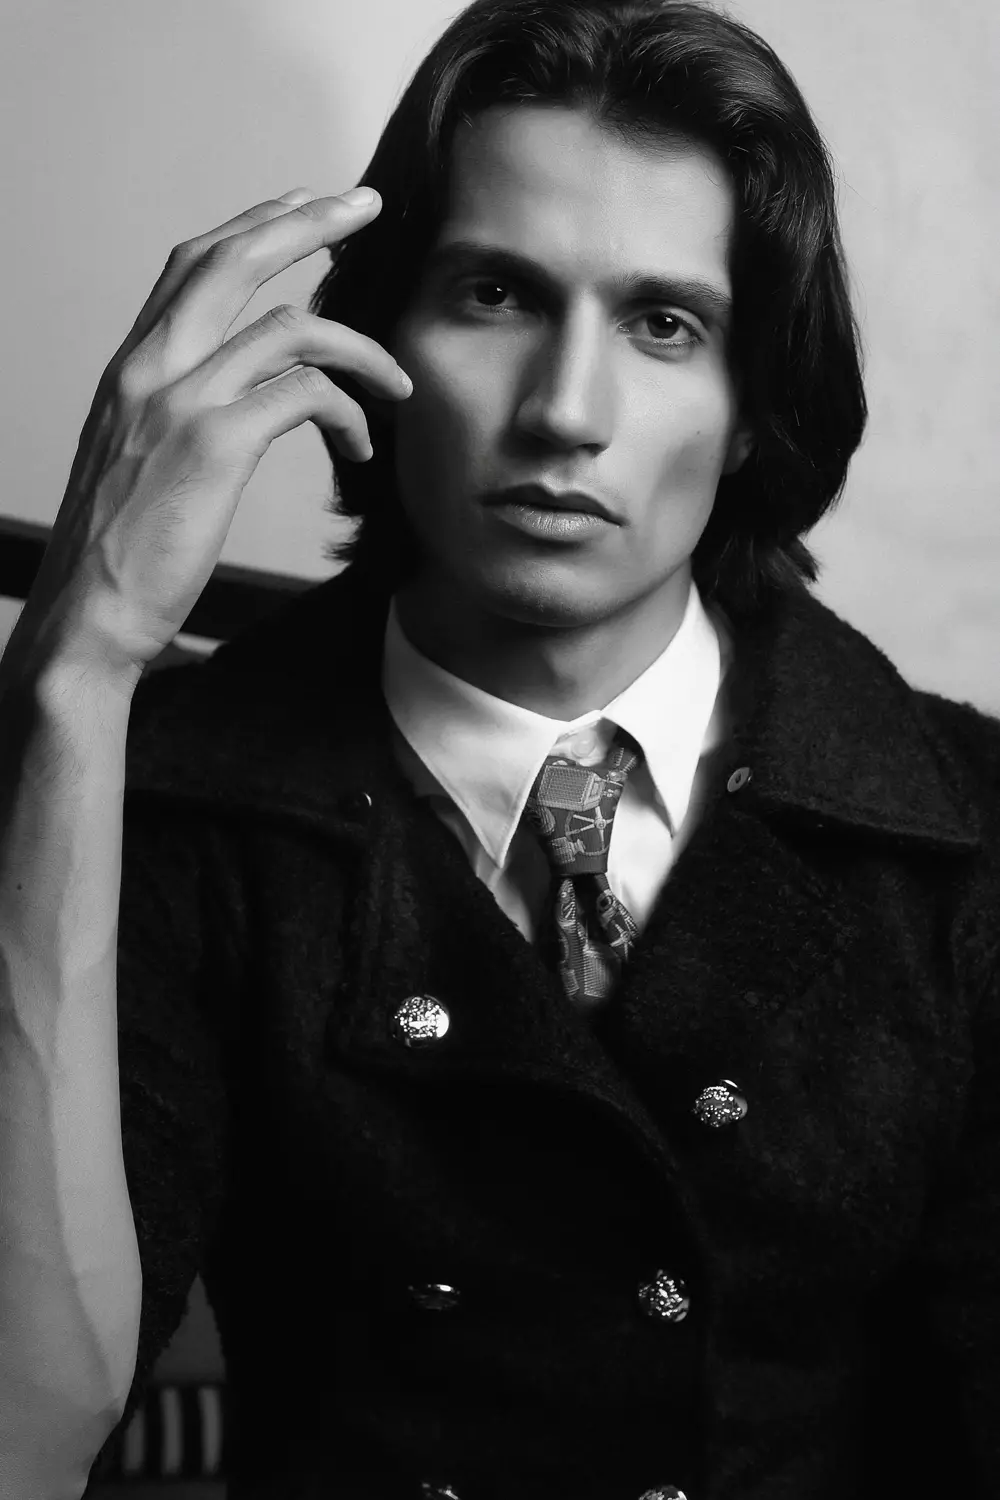 Model Giuliano Meneghin gan Mendelson Villanueva Serrano